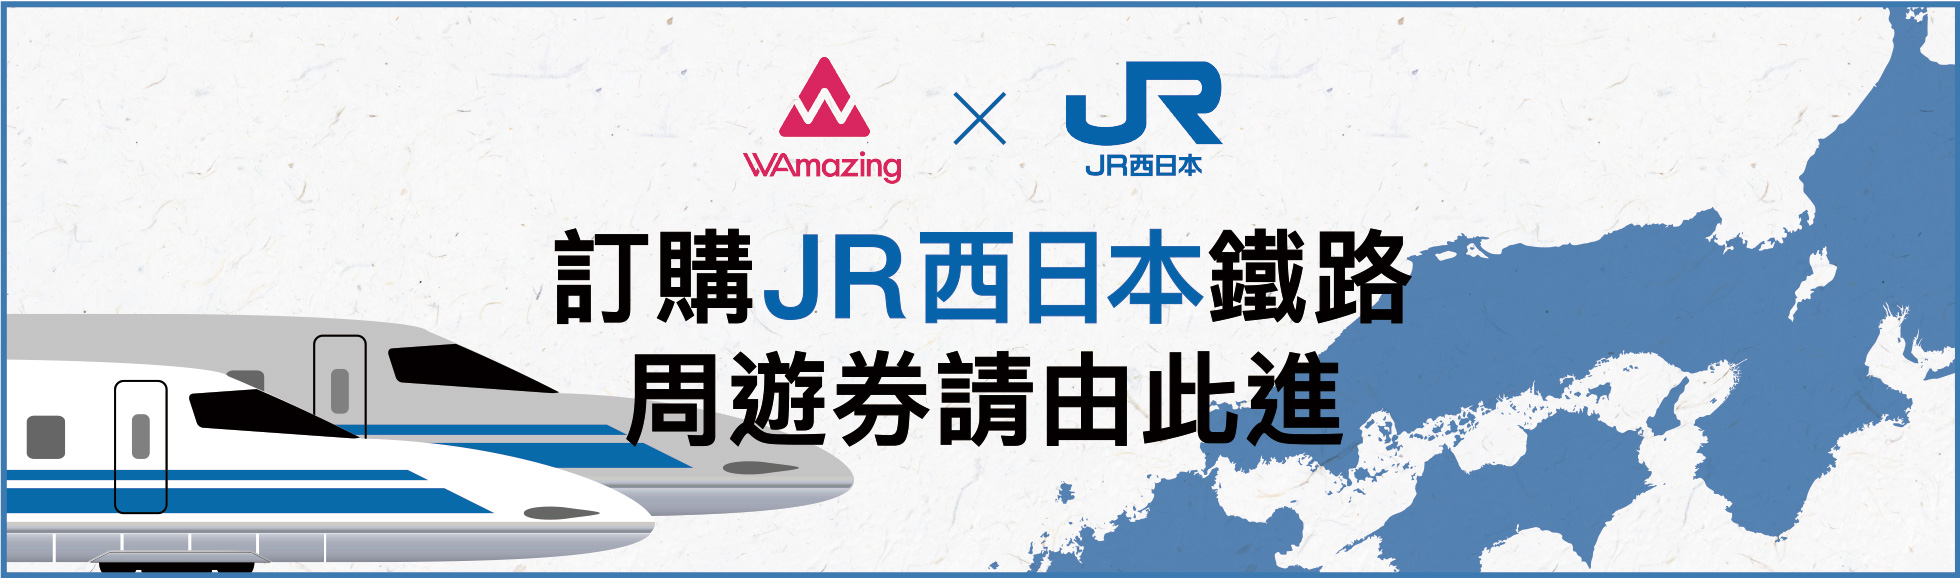 訂購JR西日本鐵路 周遊券請由此進